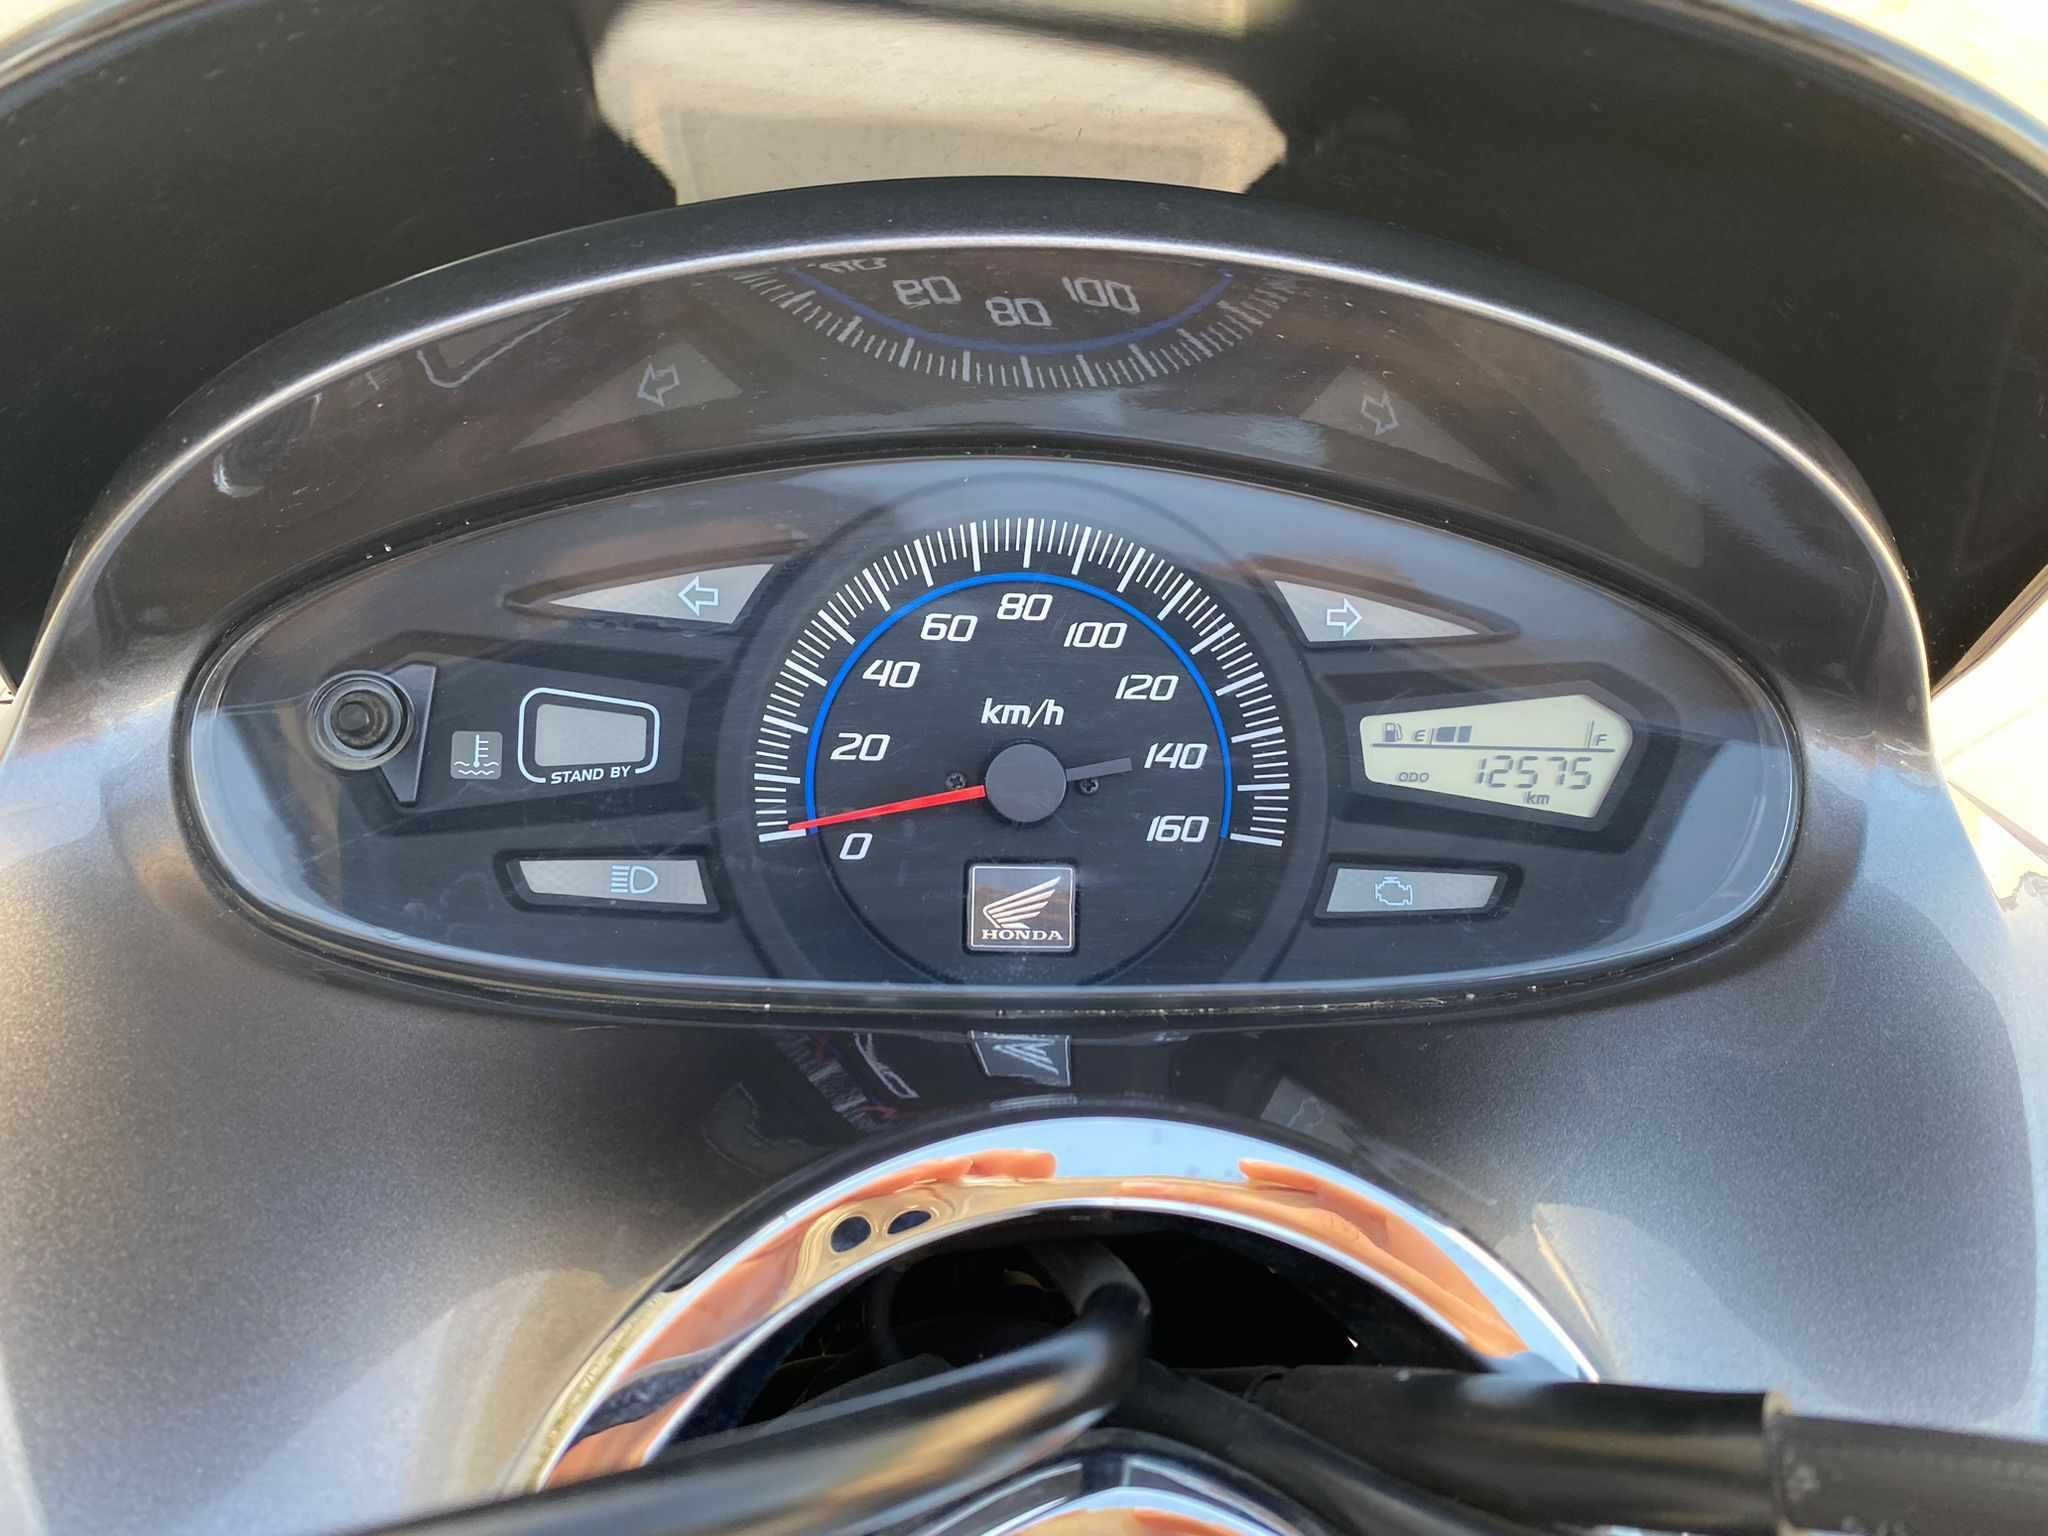 Honda PCX 125 impecável com apenas 12575 kms